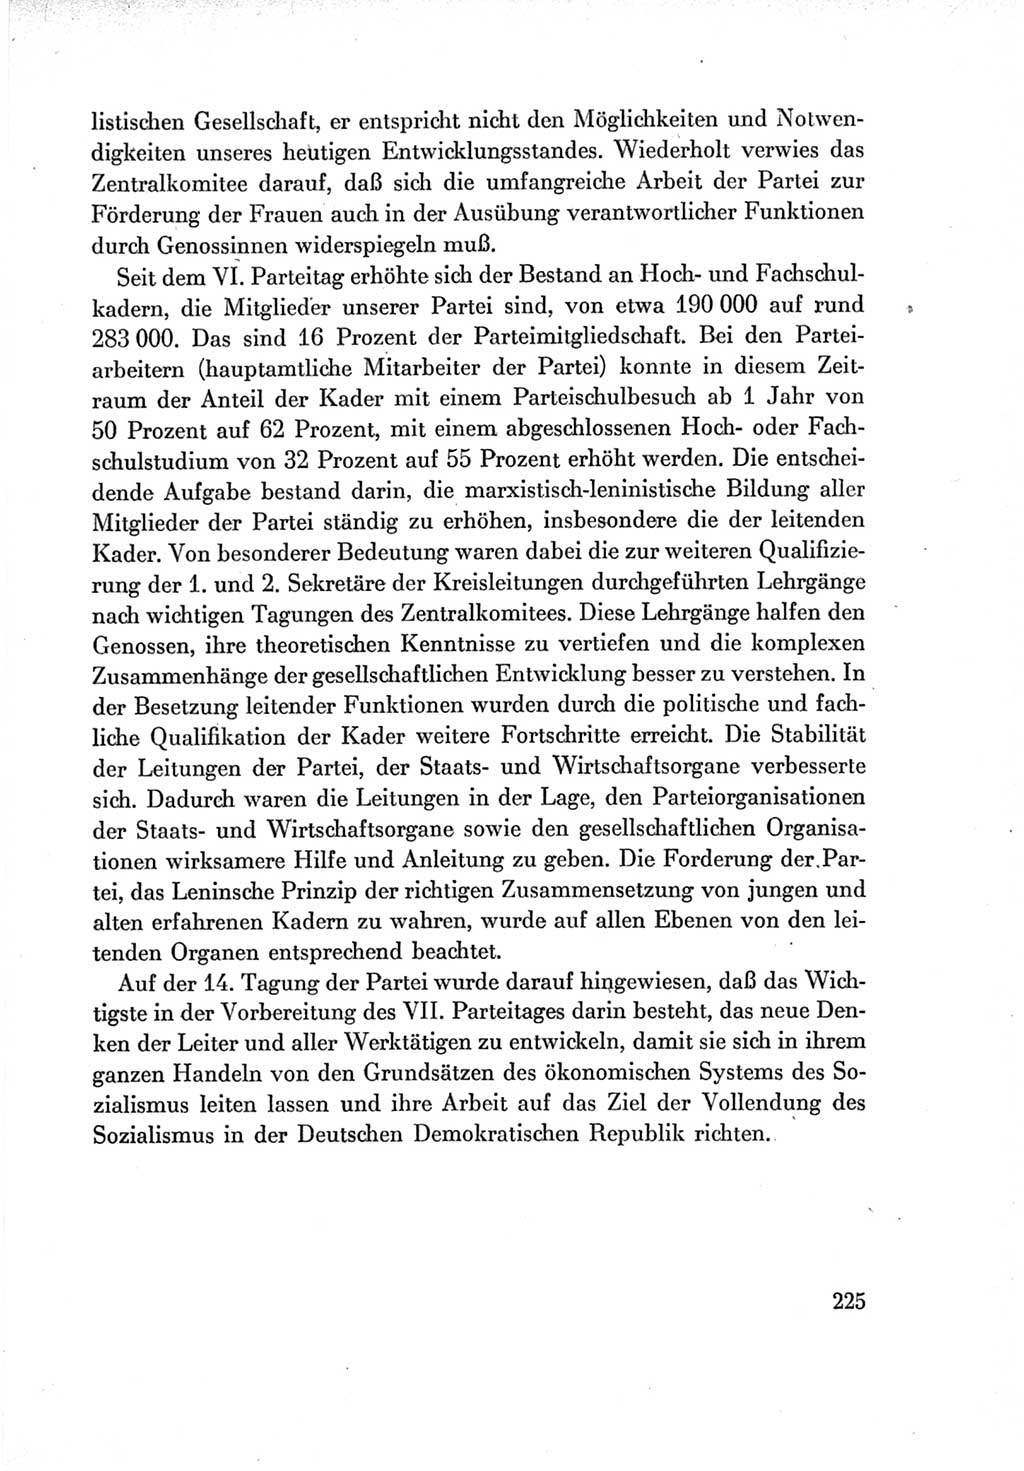 Protokoll der Verhandlungen des Ⅶ. Parteitages der Sozialistischen Einheitspartei Deutschlands (SED) [Deutsche Demokratische Republik (DDR)] 1967, Band Ⅳ, Seite 225 (Prot. Verh. Ⅶ. PT SED DDR 1967, Bd. Ⅳ, S. 225)